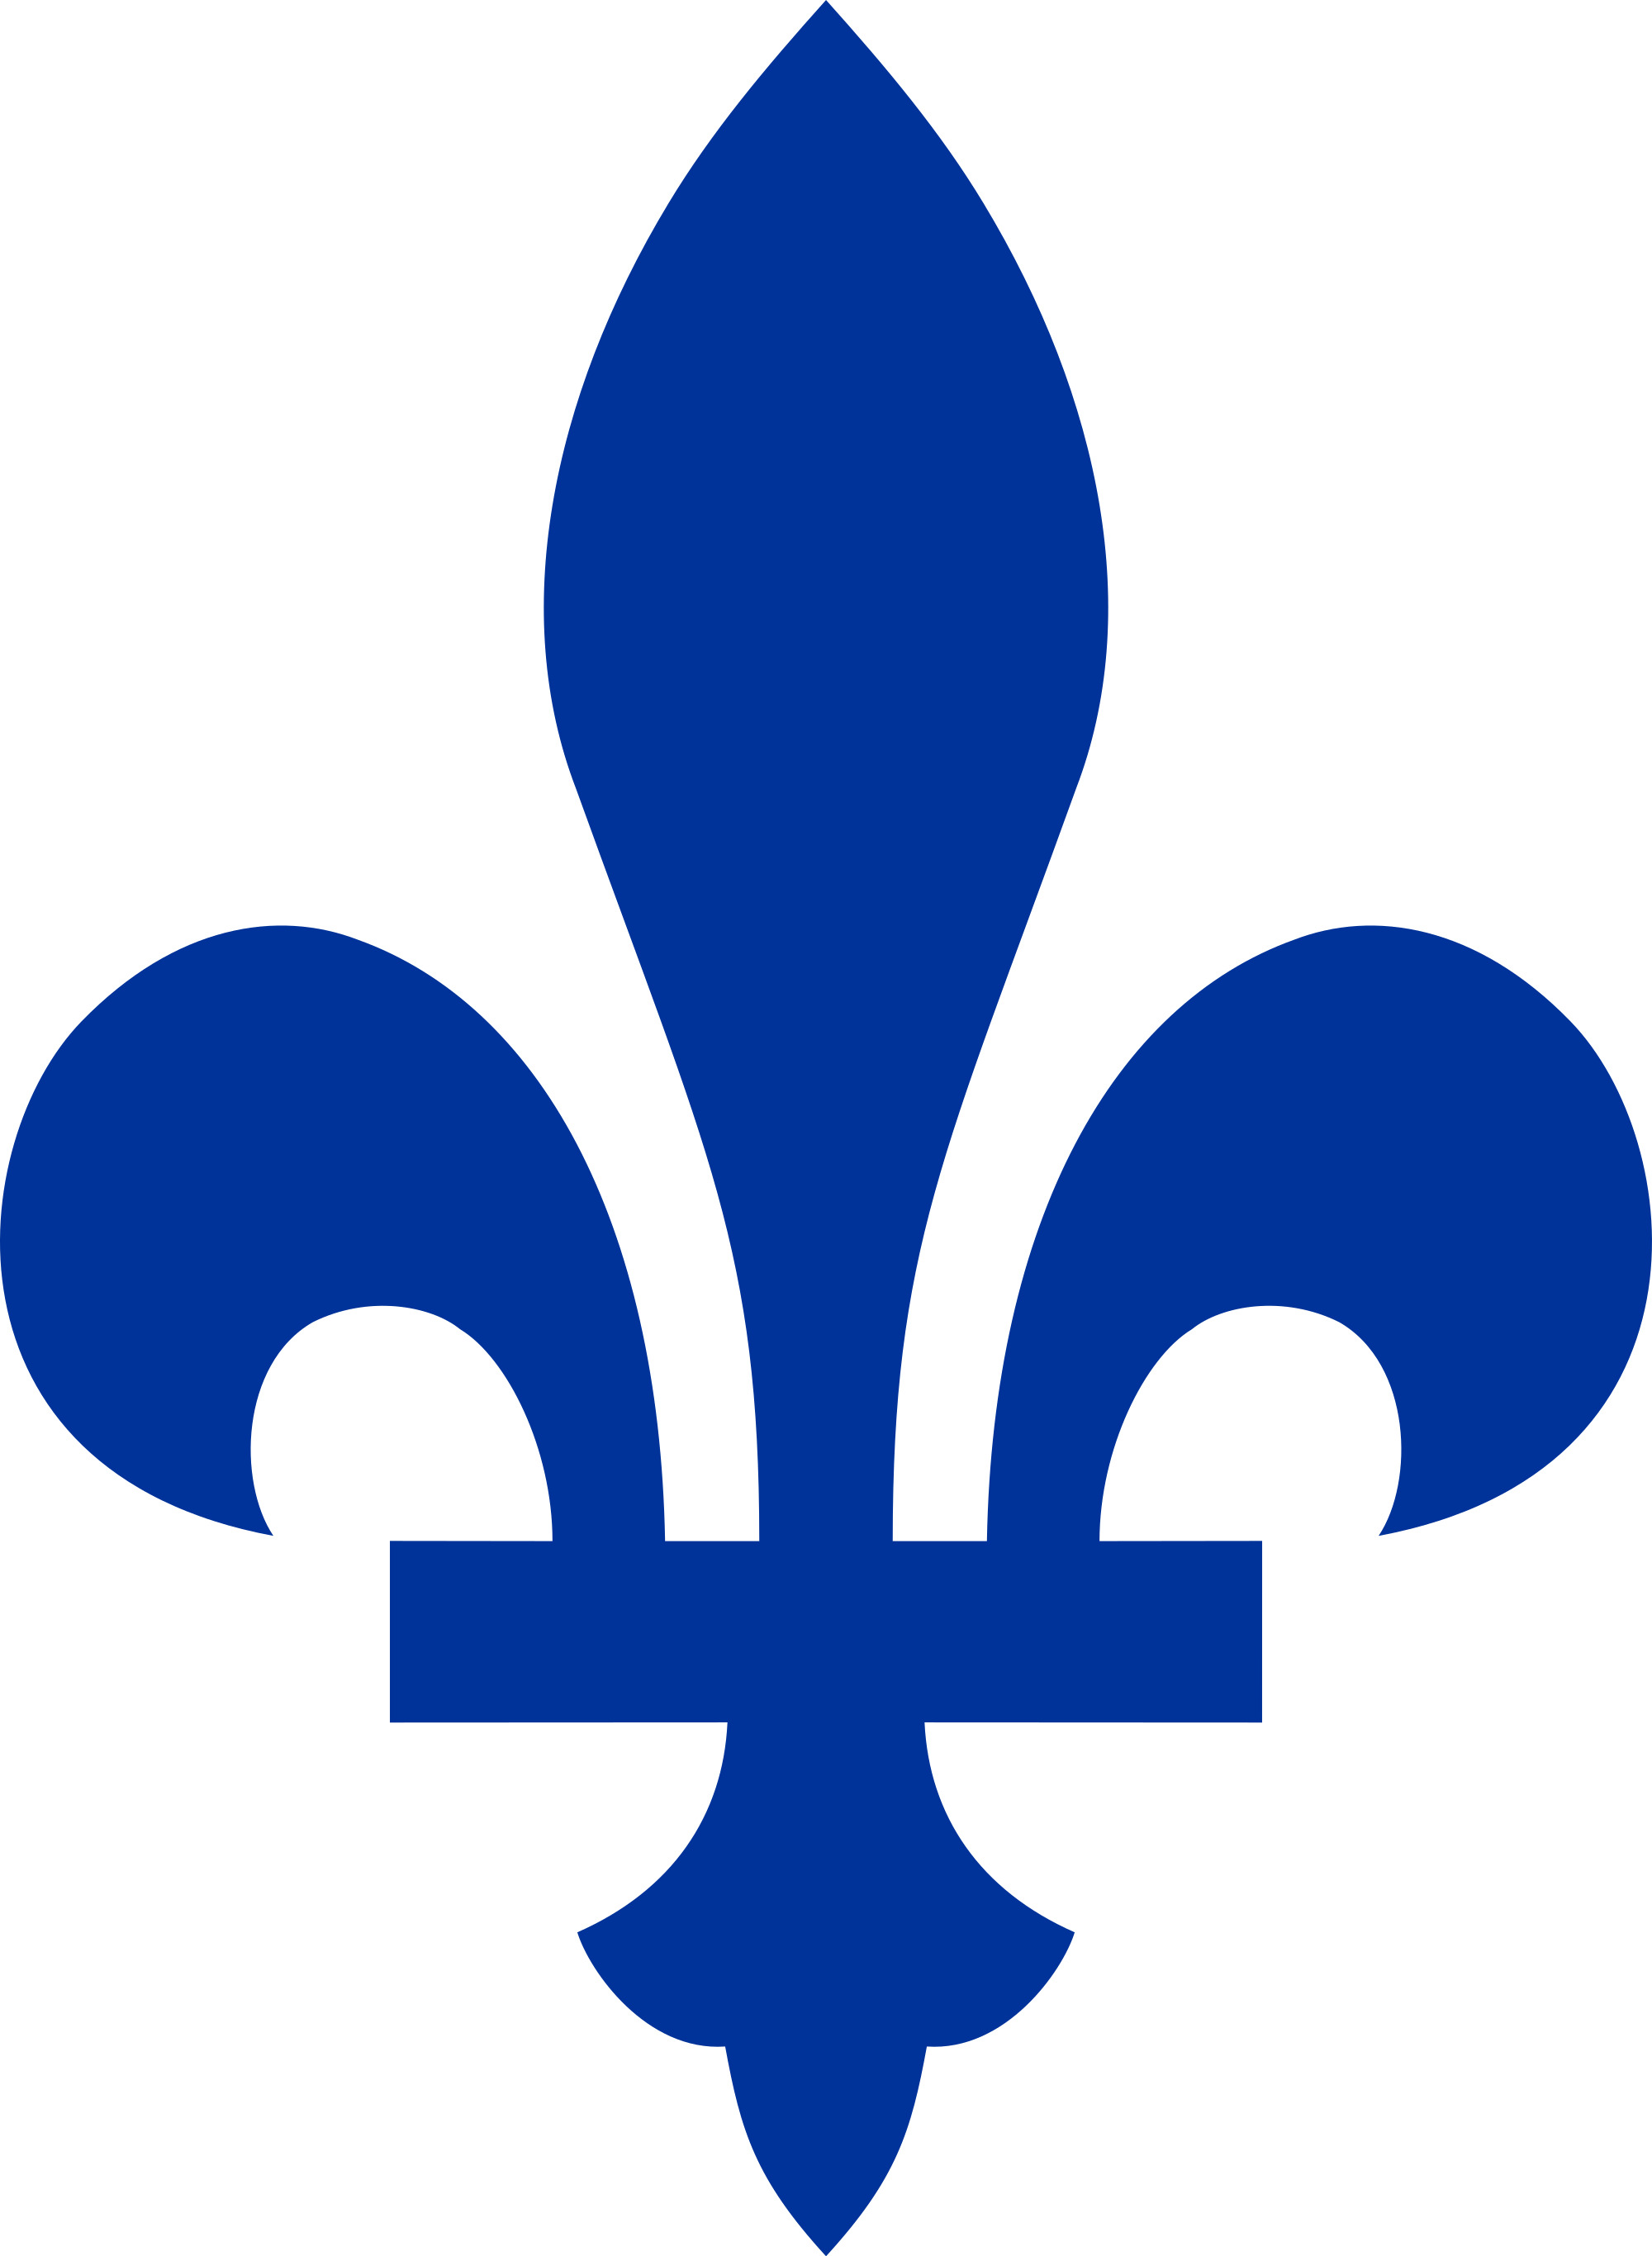 Quebec Fleur De Lis png icons